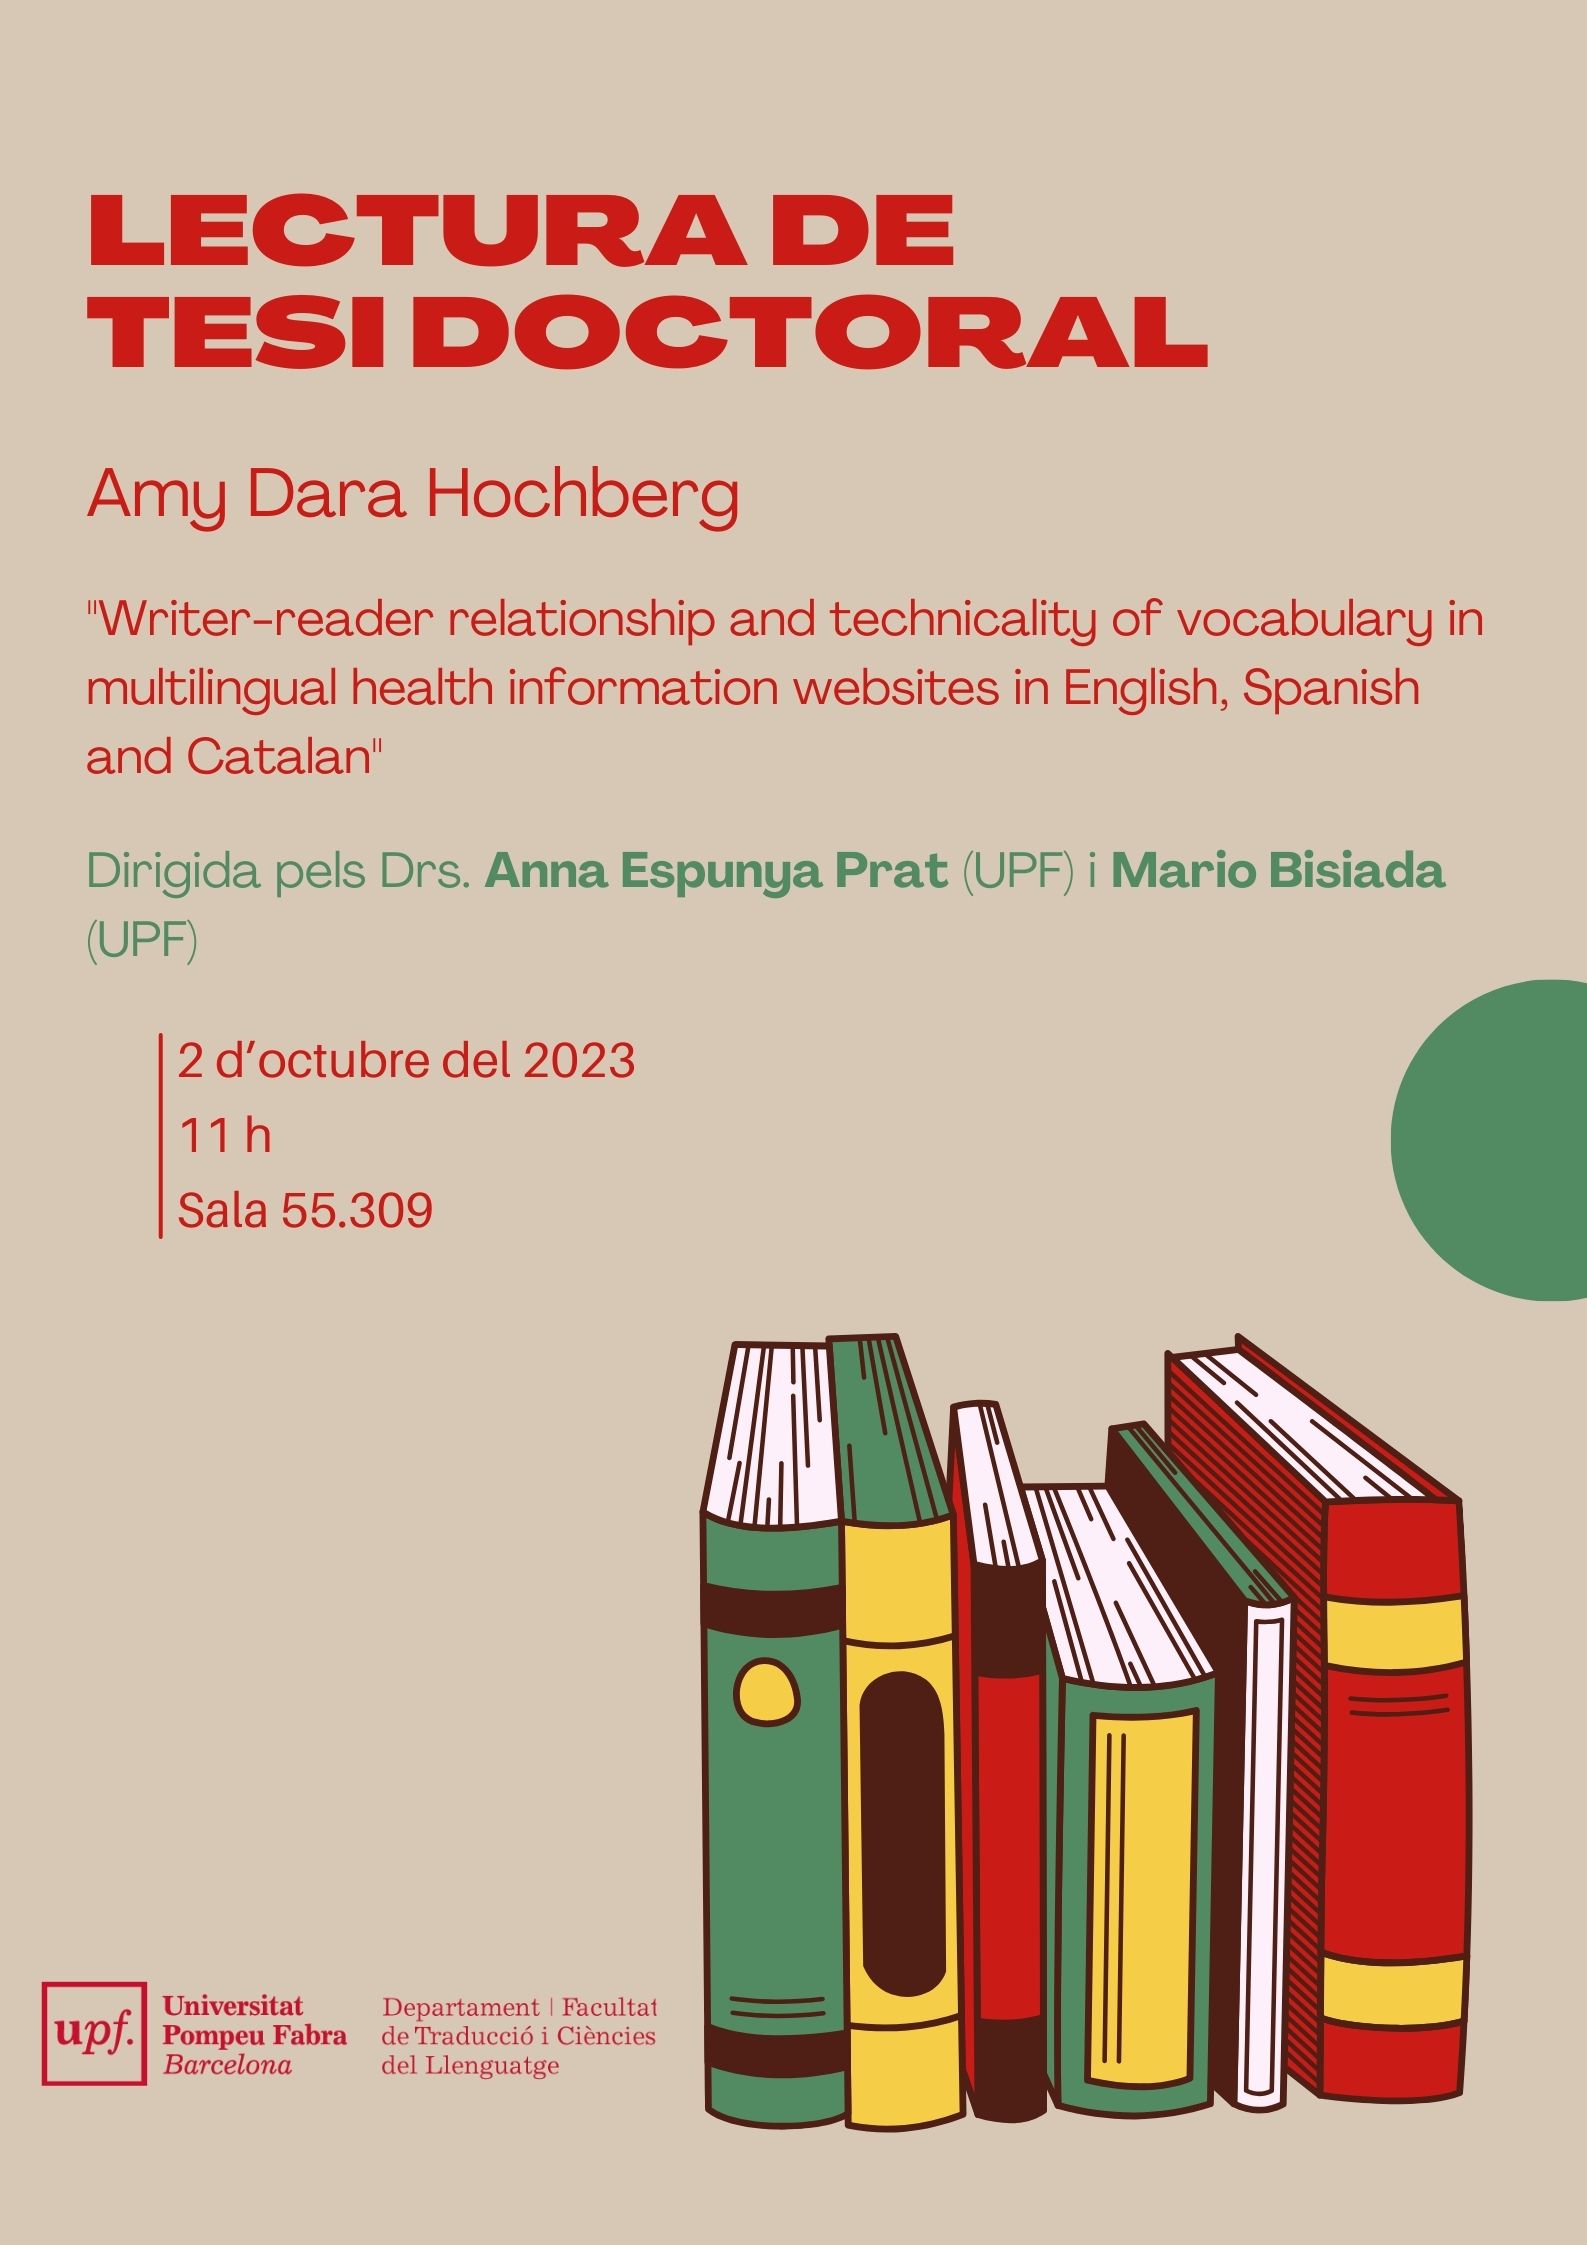 02/10/2023  Lectura de la tesi doctoral d'Amy Dara Hochberg, a les 11.00 hores